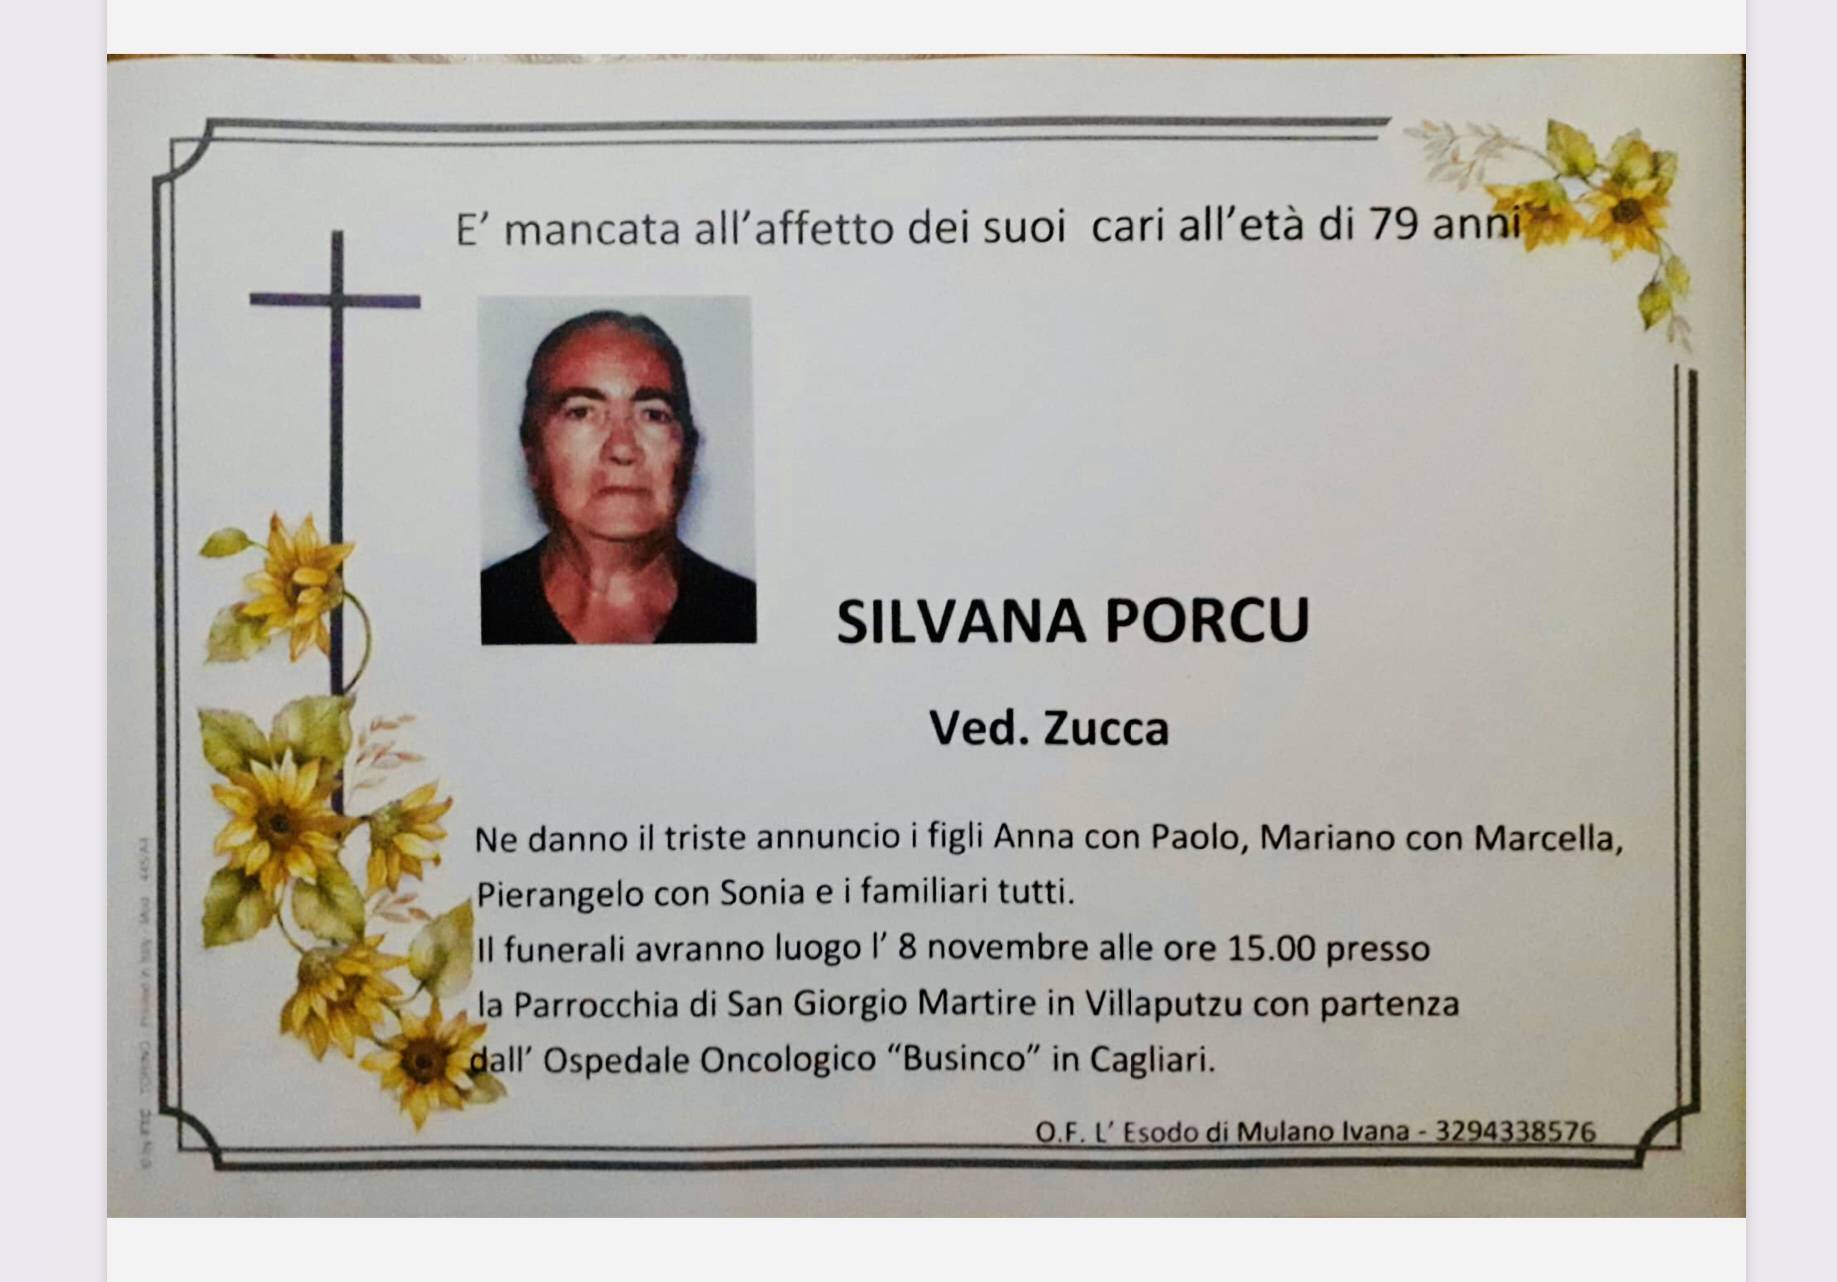 Silvana Porcu